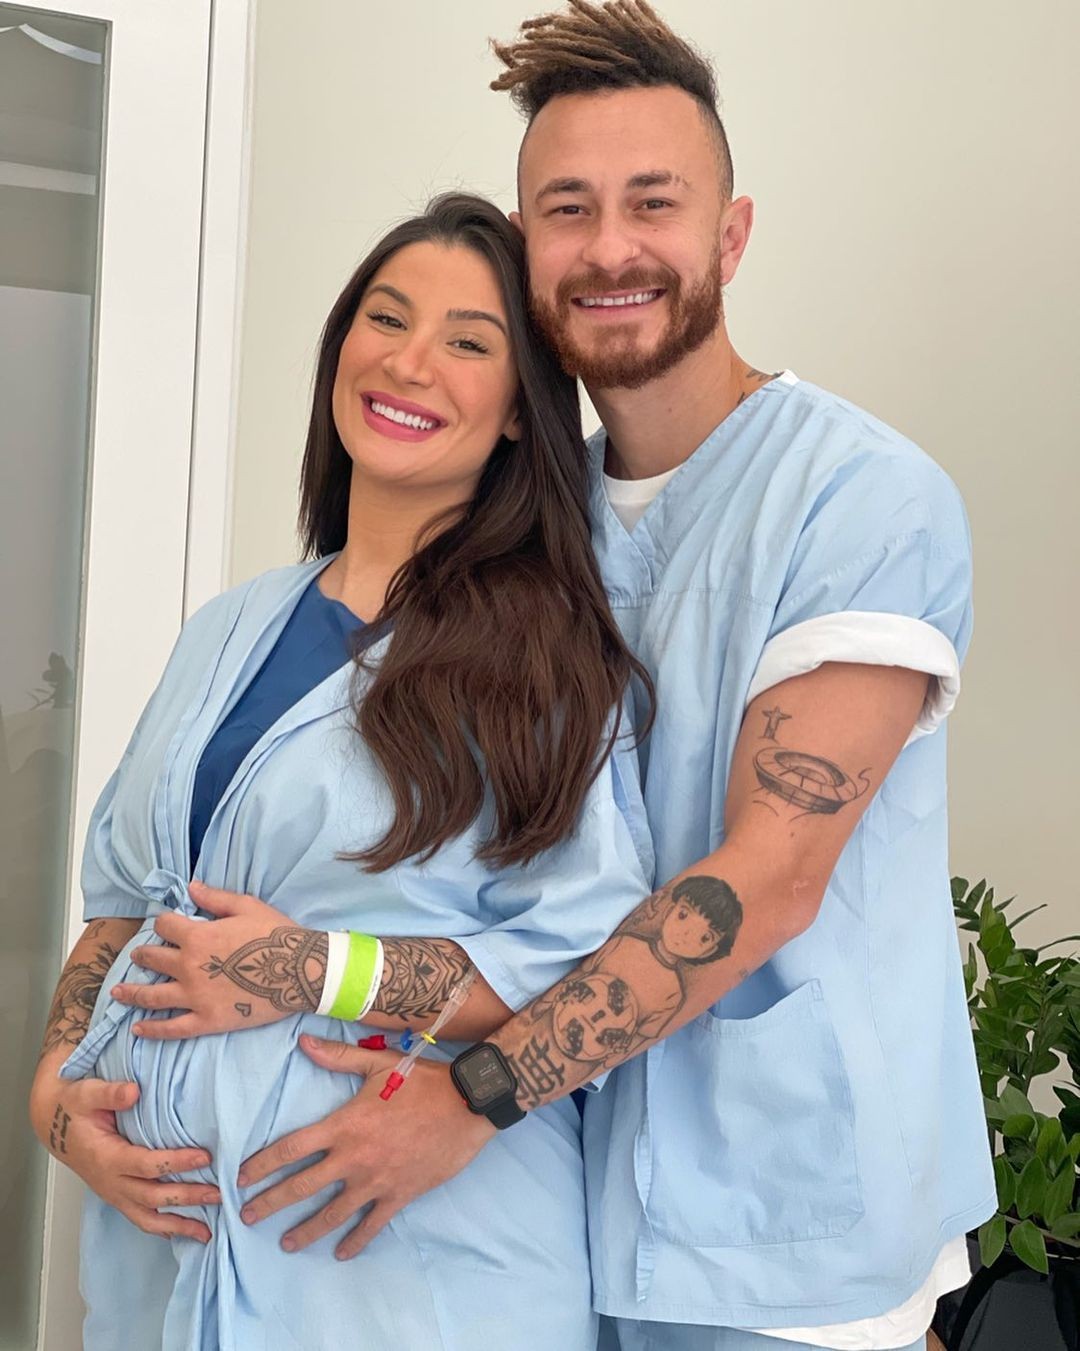 Bianca Andrade dá entrada na maternidade (Foto: Reprodução / Instagram)